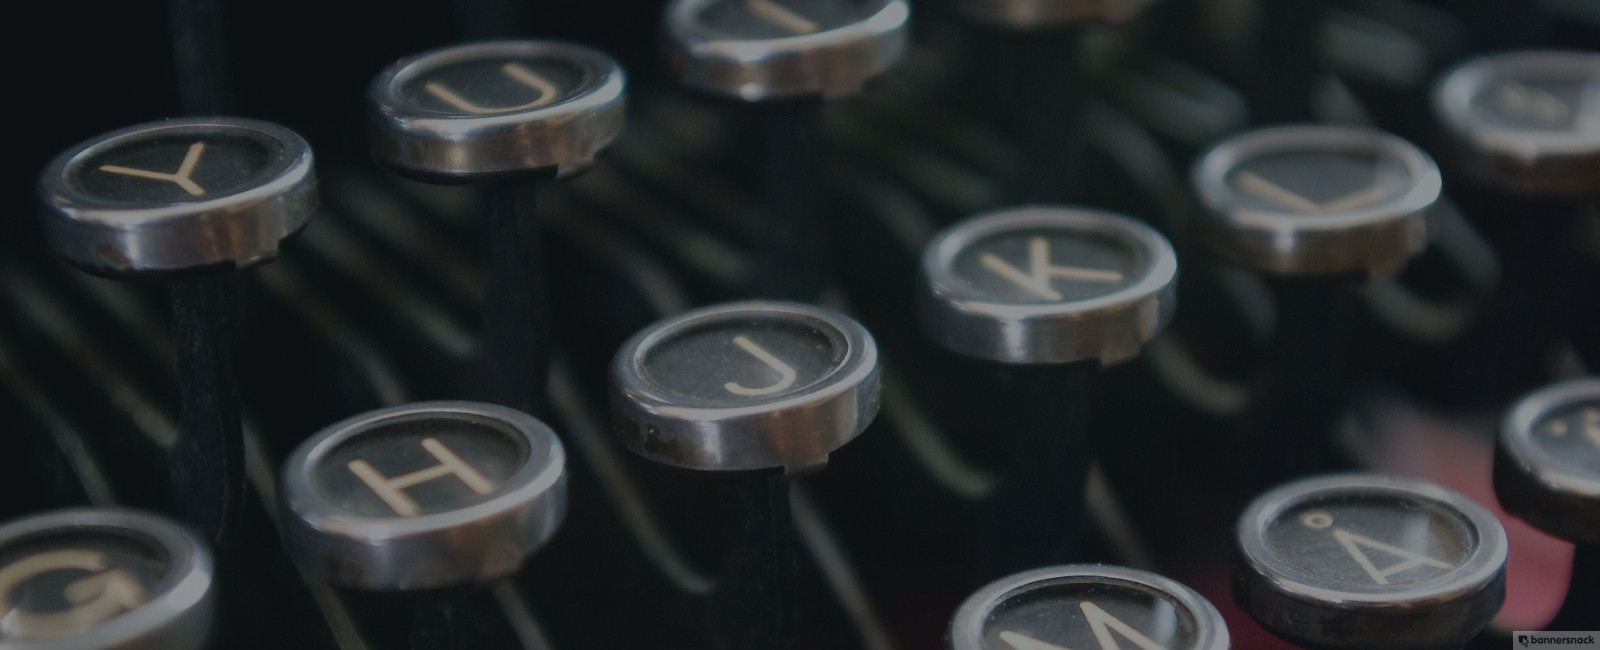 Typewriter used for copywriting